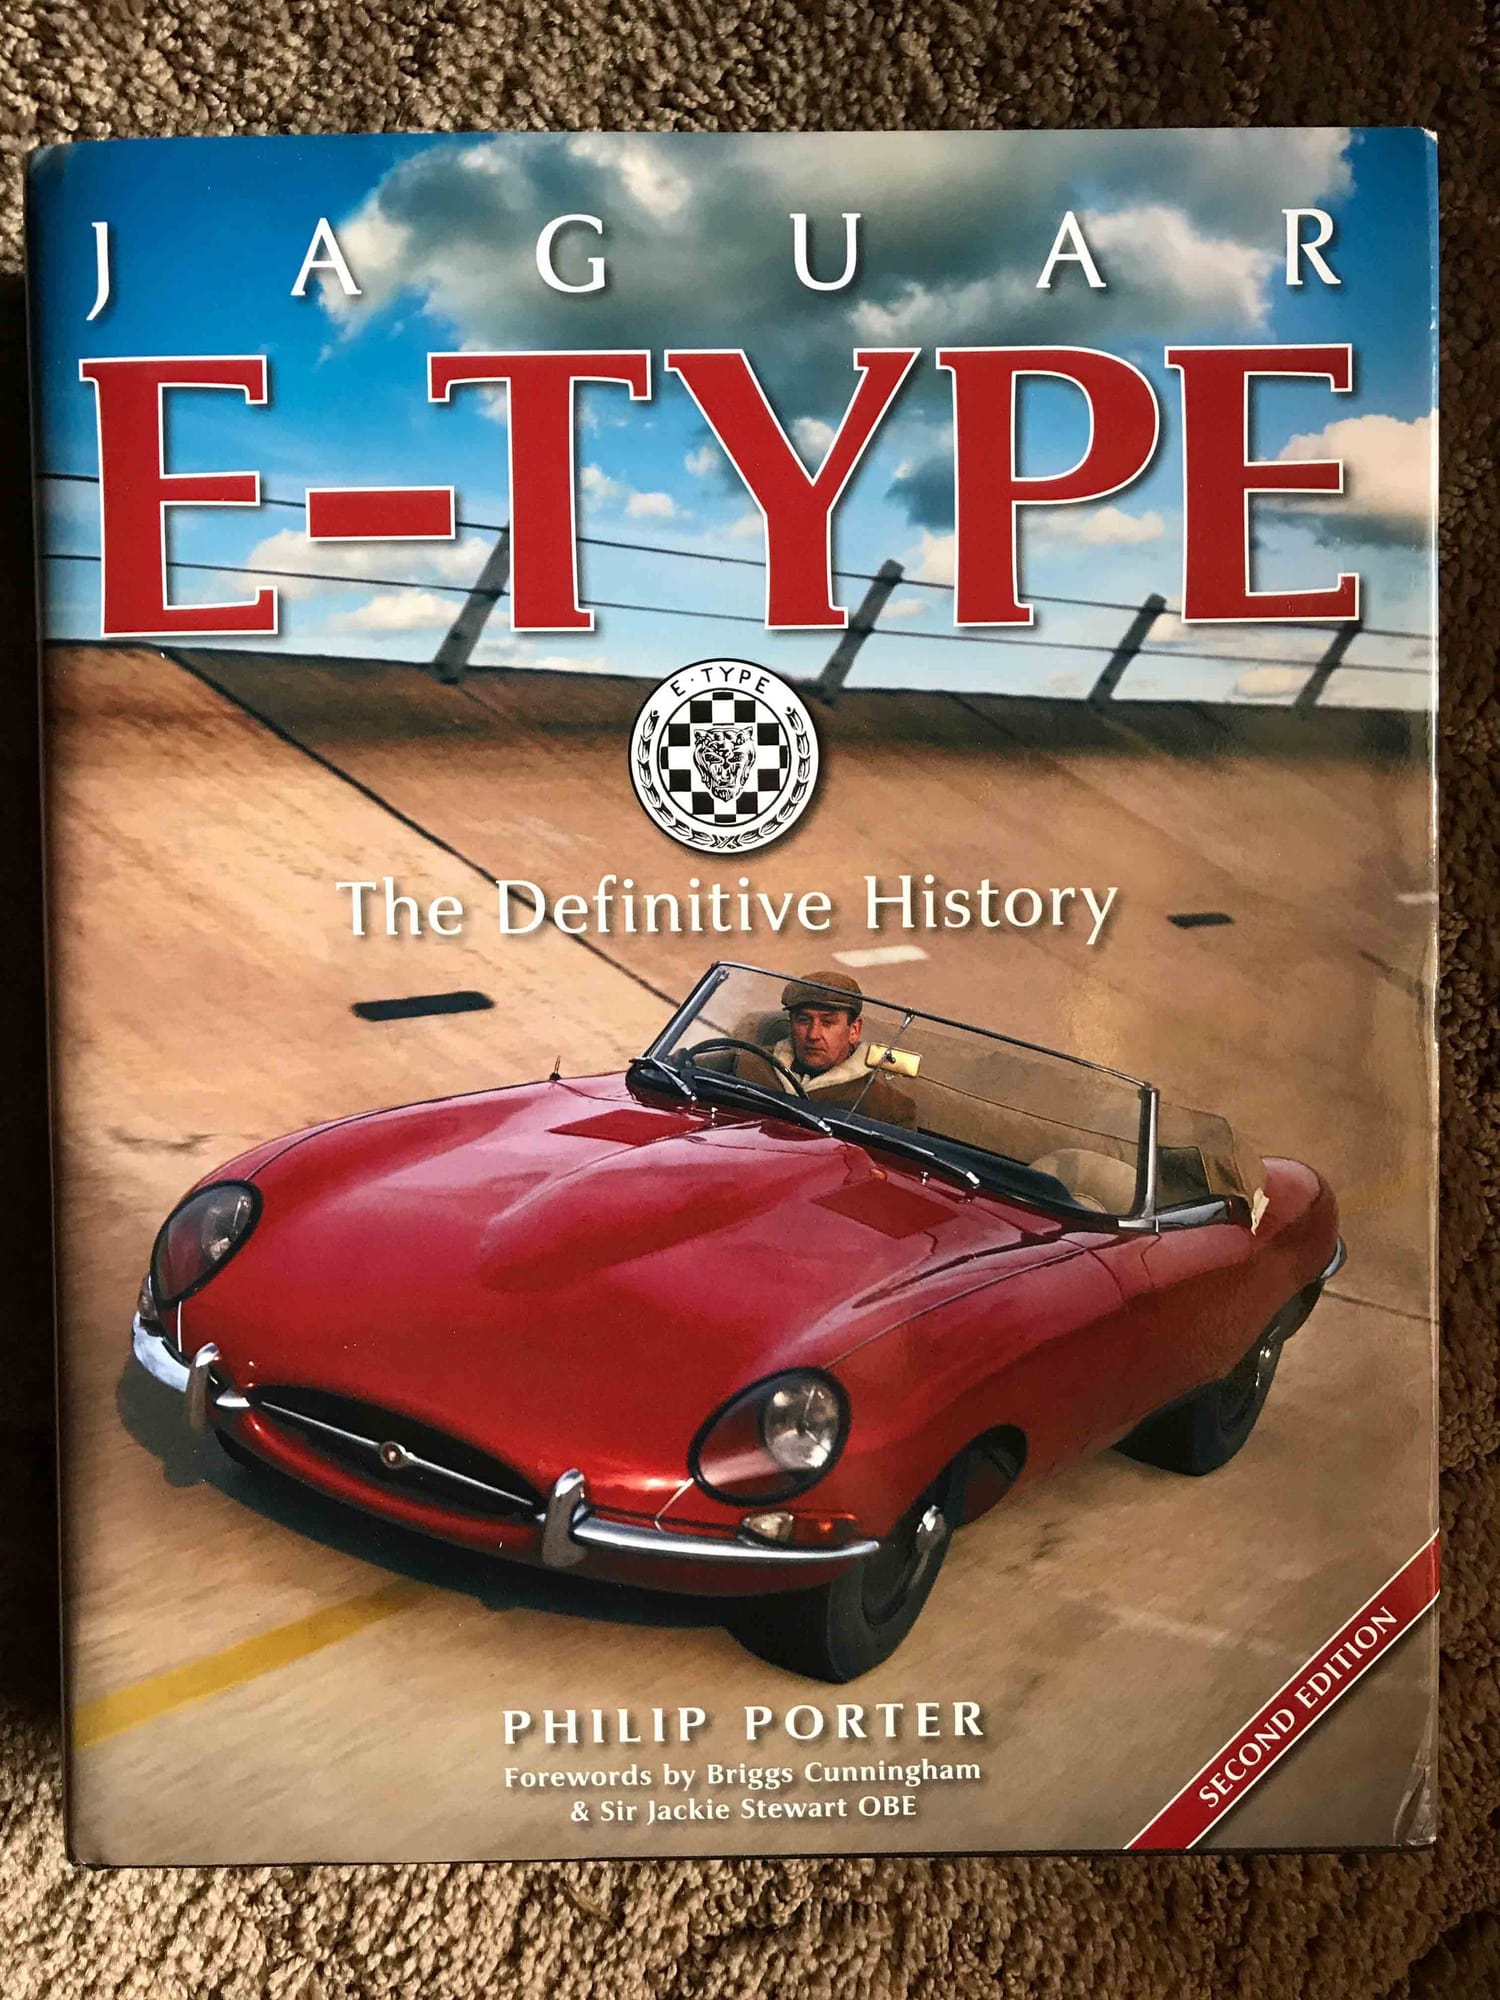 Best E-Type book, EVER! - Jaguar Forums - Jaguar Enthusiasts Forum